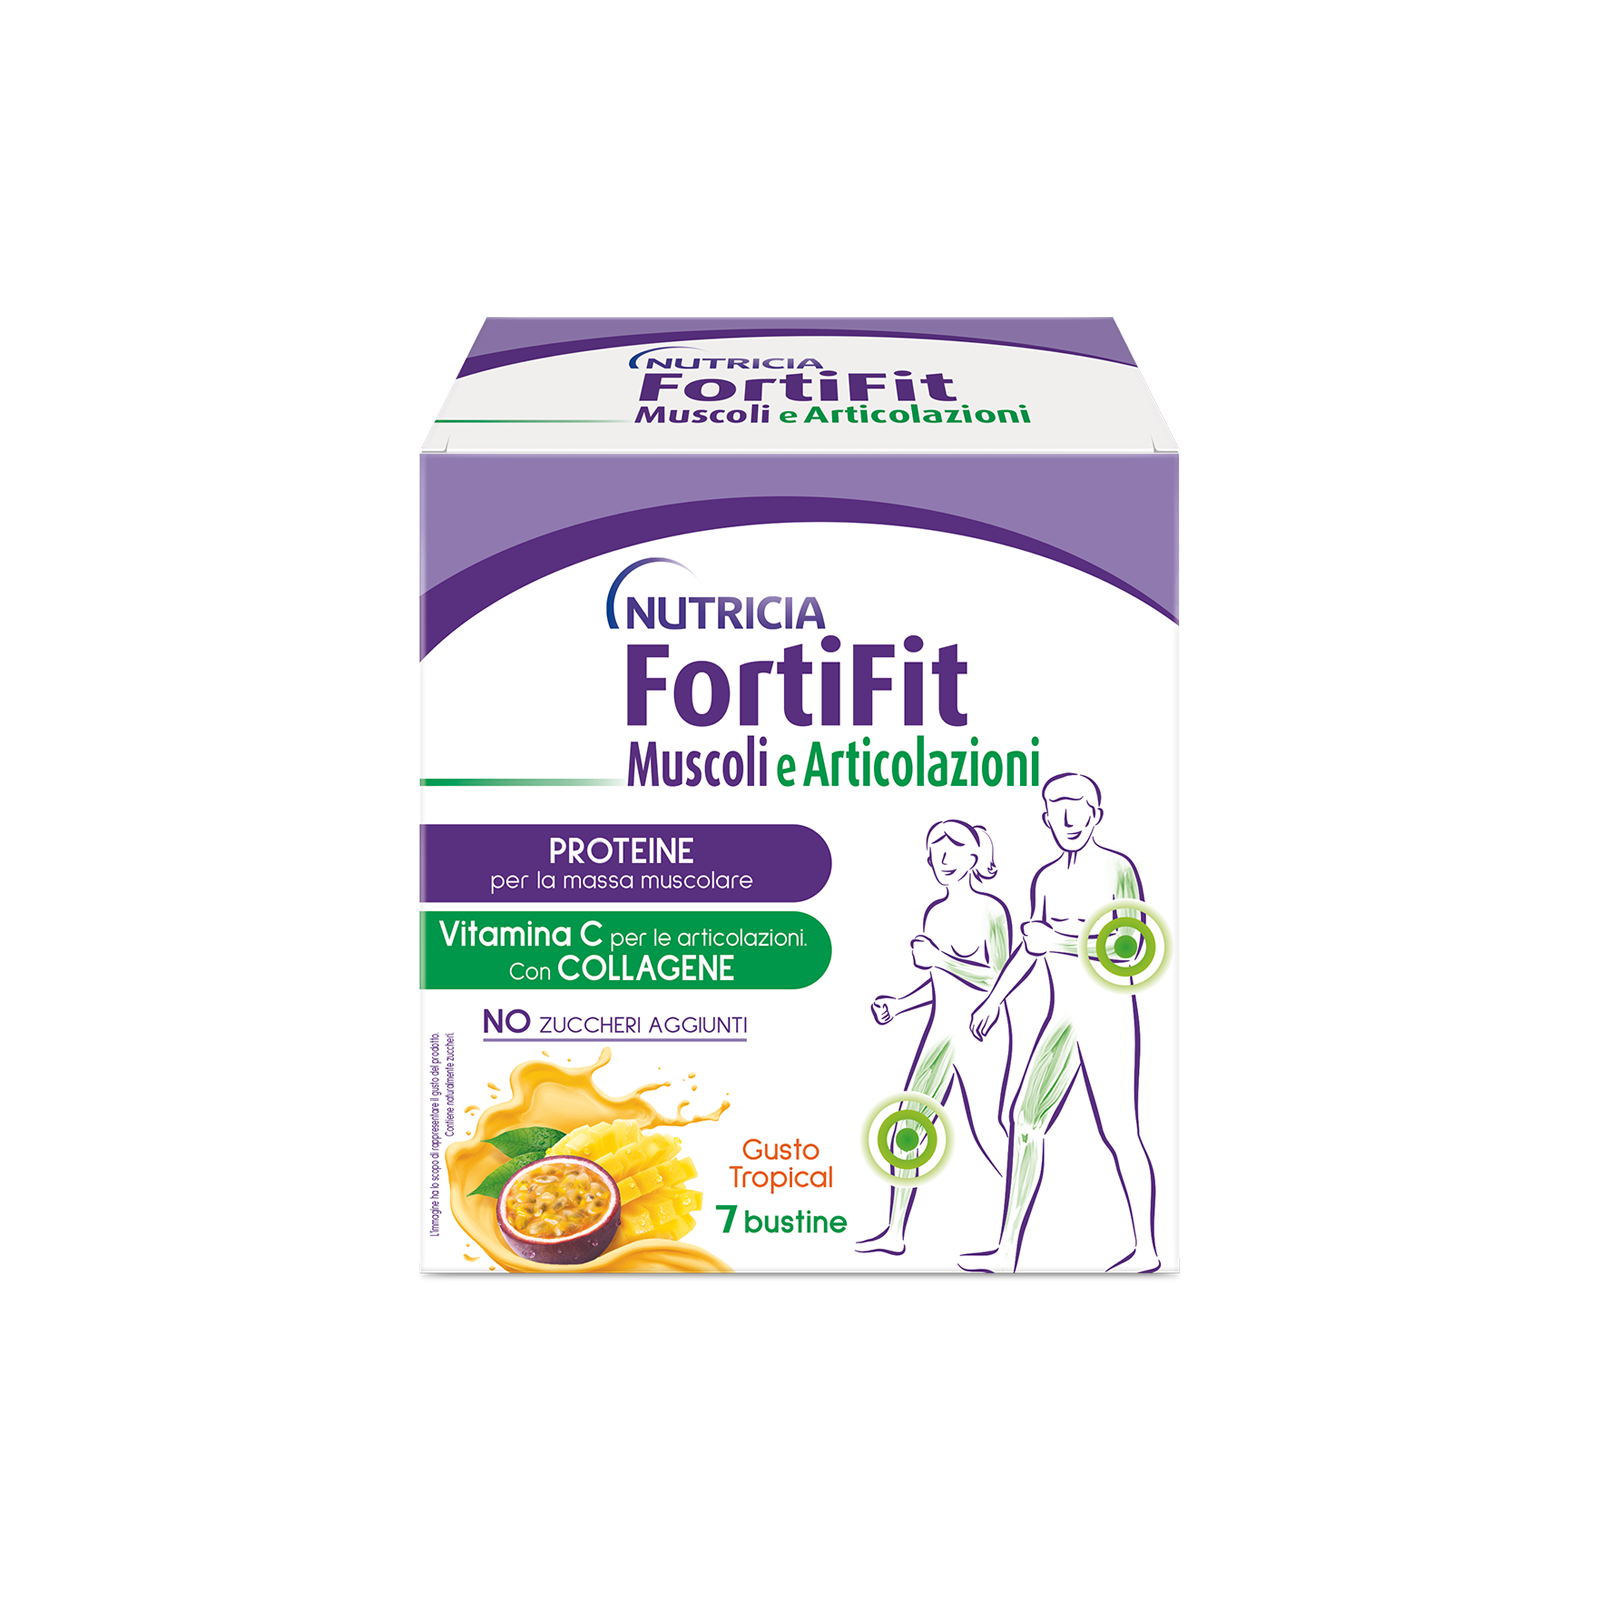 FortiFit Muscoli e Articolazioni Tropical 1 astuccio | Nutricia